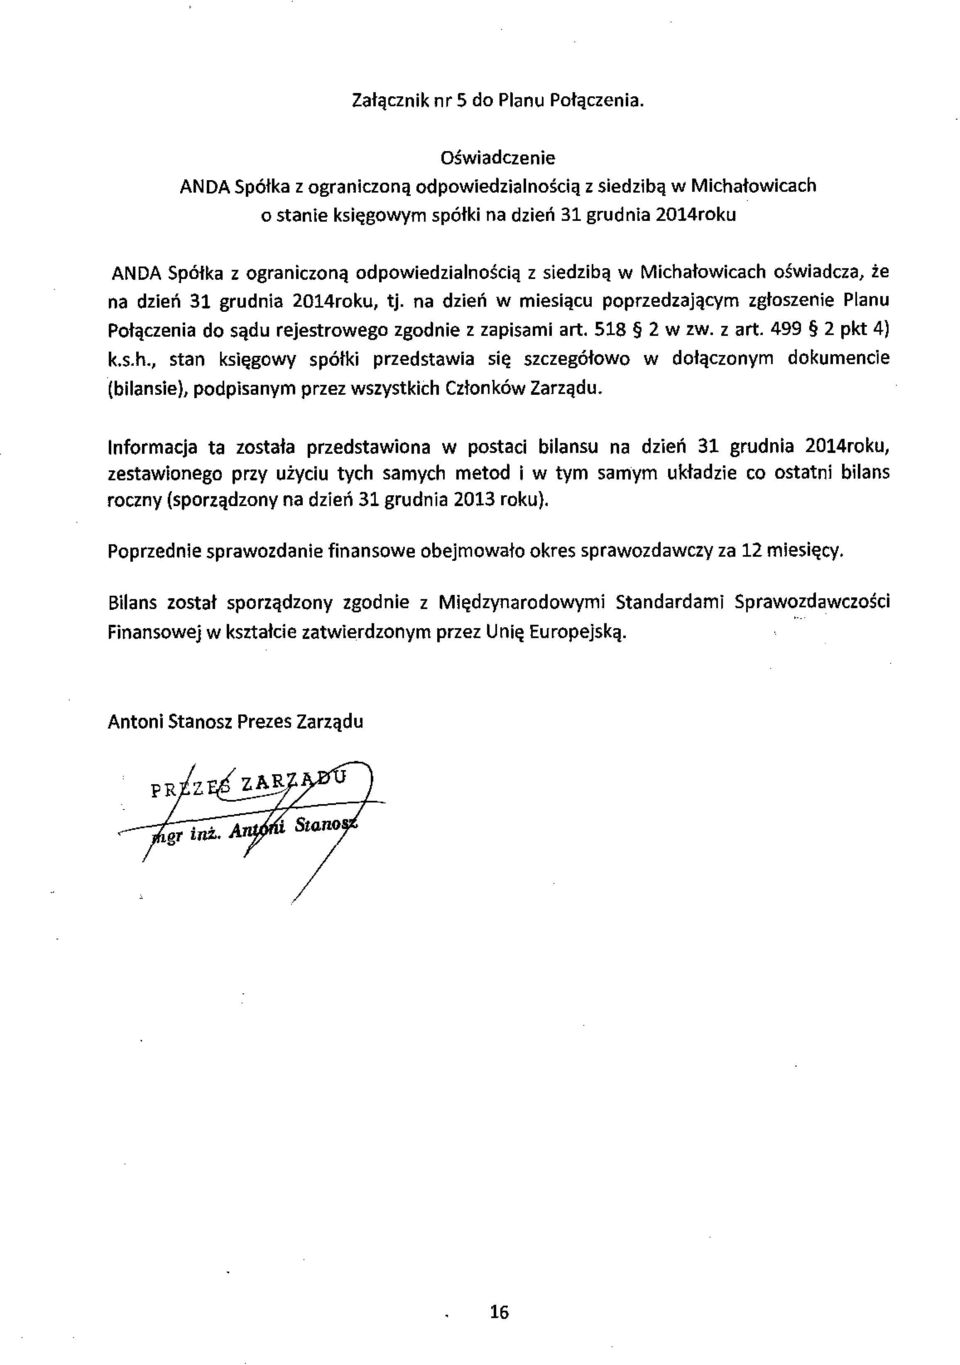 siedzib ą w Michałowicach oświadcza, że na dzie ń 31 grudnia 2014roku, tj. na dzie ń w miesiącu poprzedzaj ącym zgłoszenie Planu Połączenia do s ądu rejestrowego zgodnie z zapisami art. 518 2 W Zw.